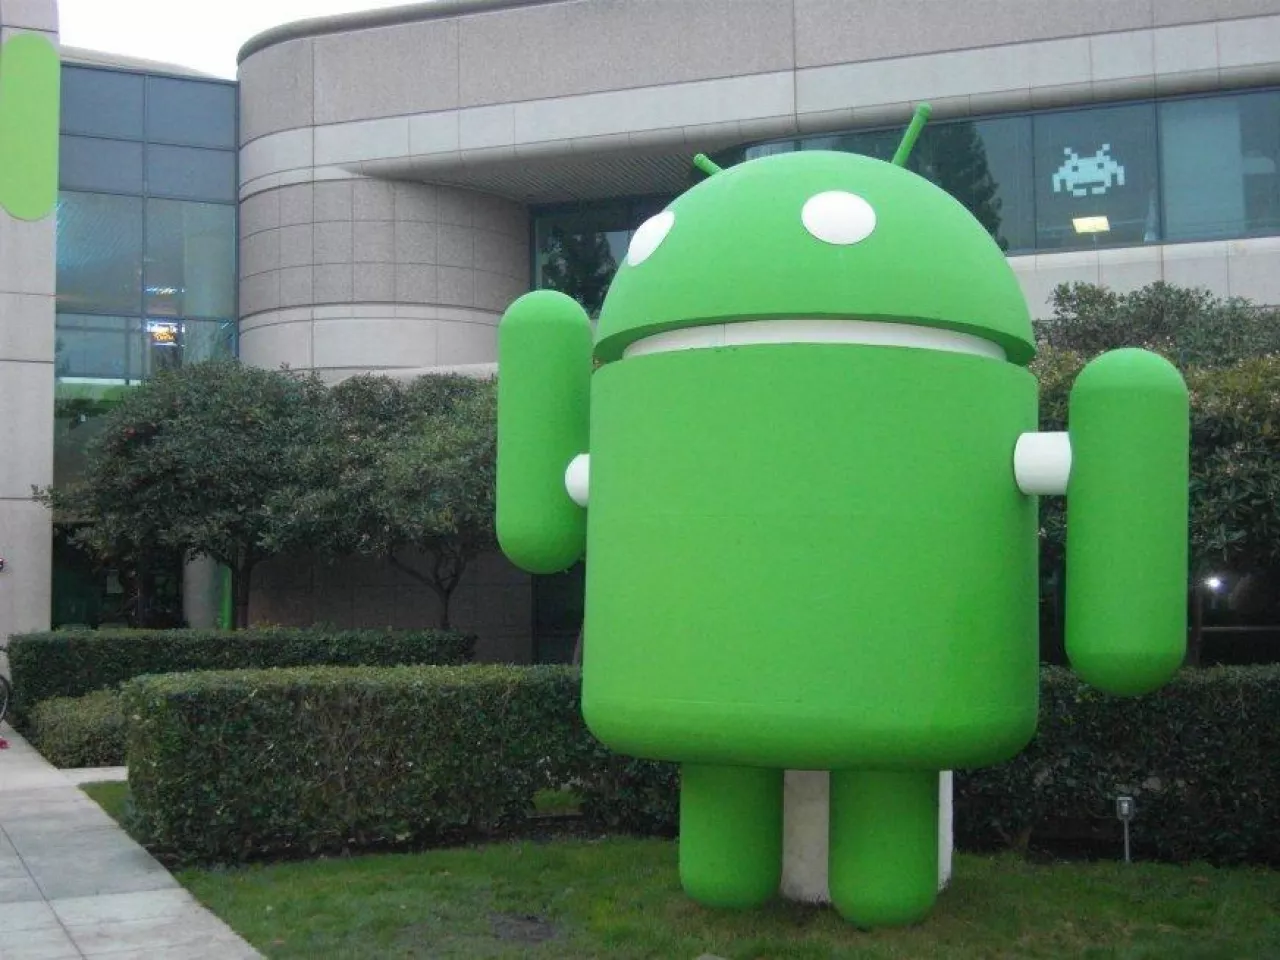 Kolejna wersja systemu Android będzie nosiła nazwę Android 10 (fot. Flickr/C.Grenier, na lic. CC BY-SA 2.0)